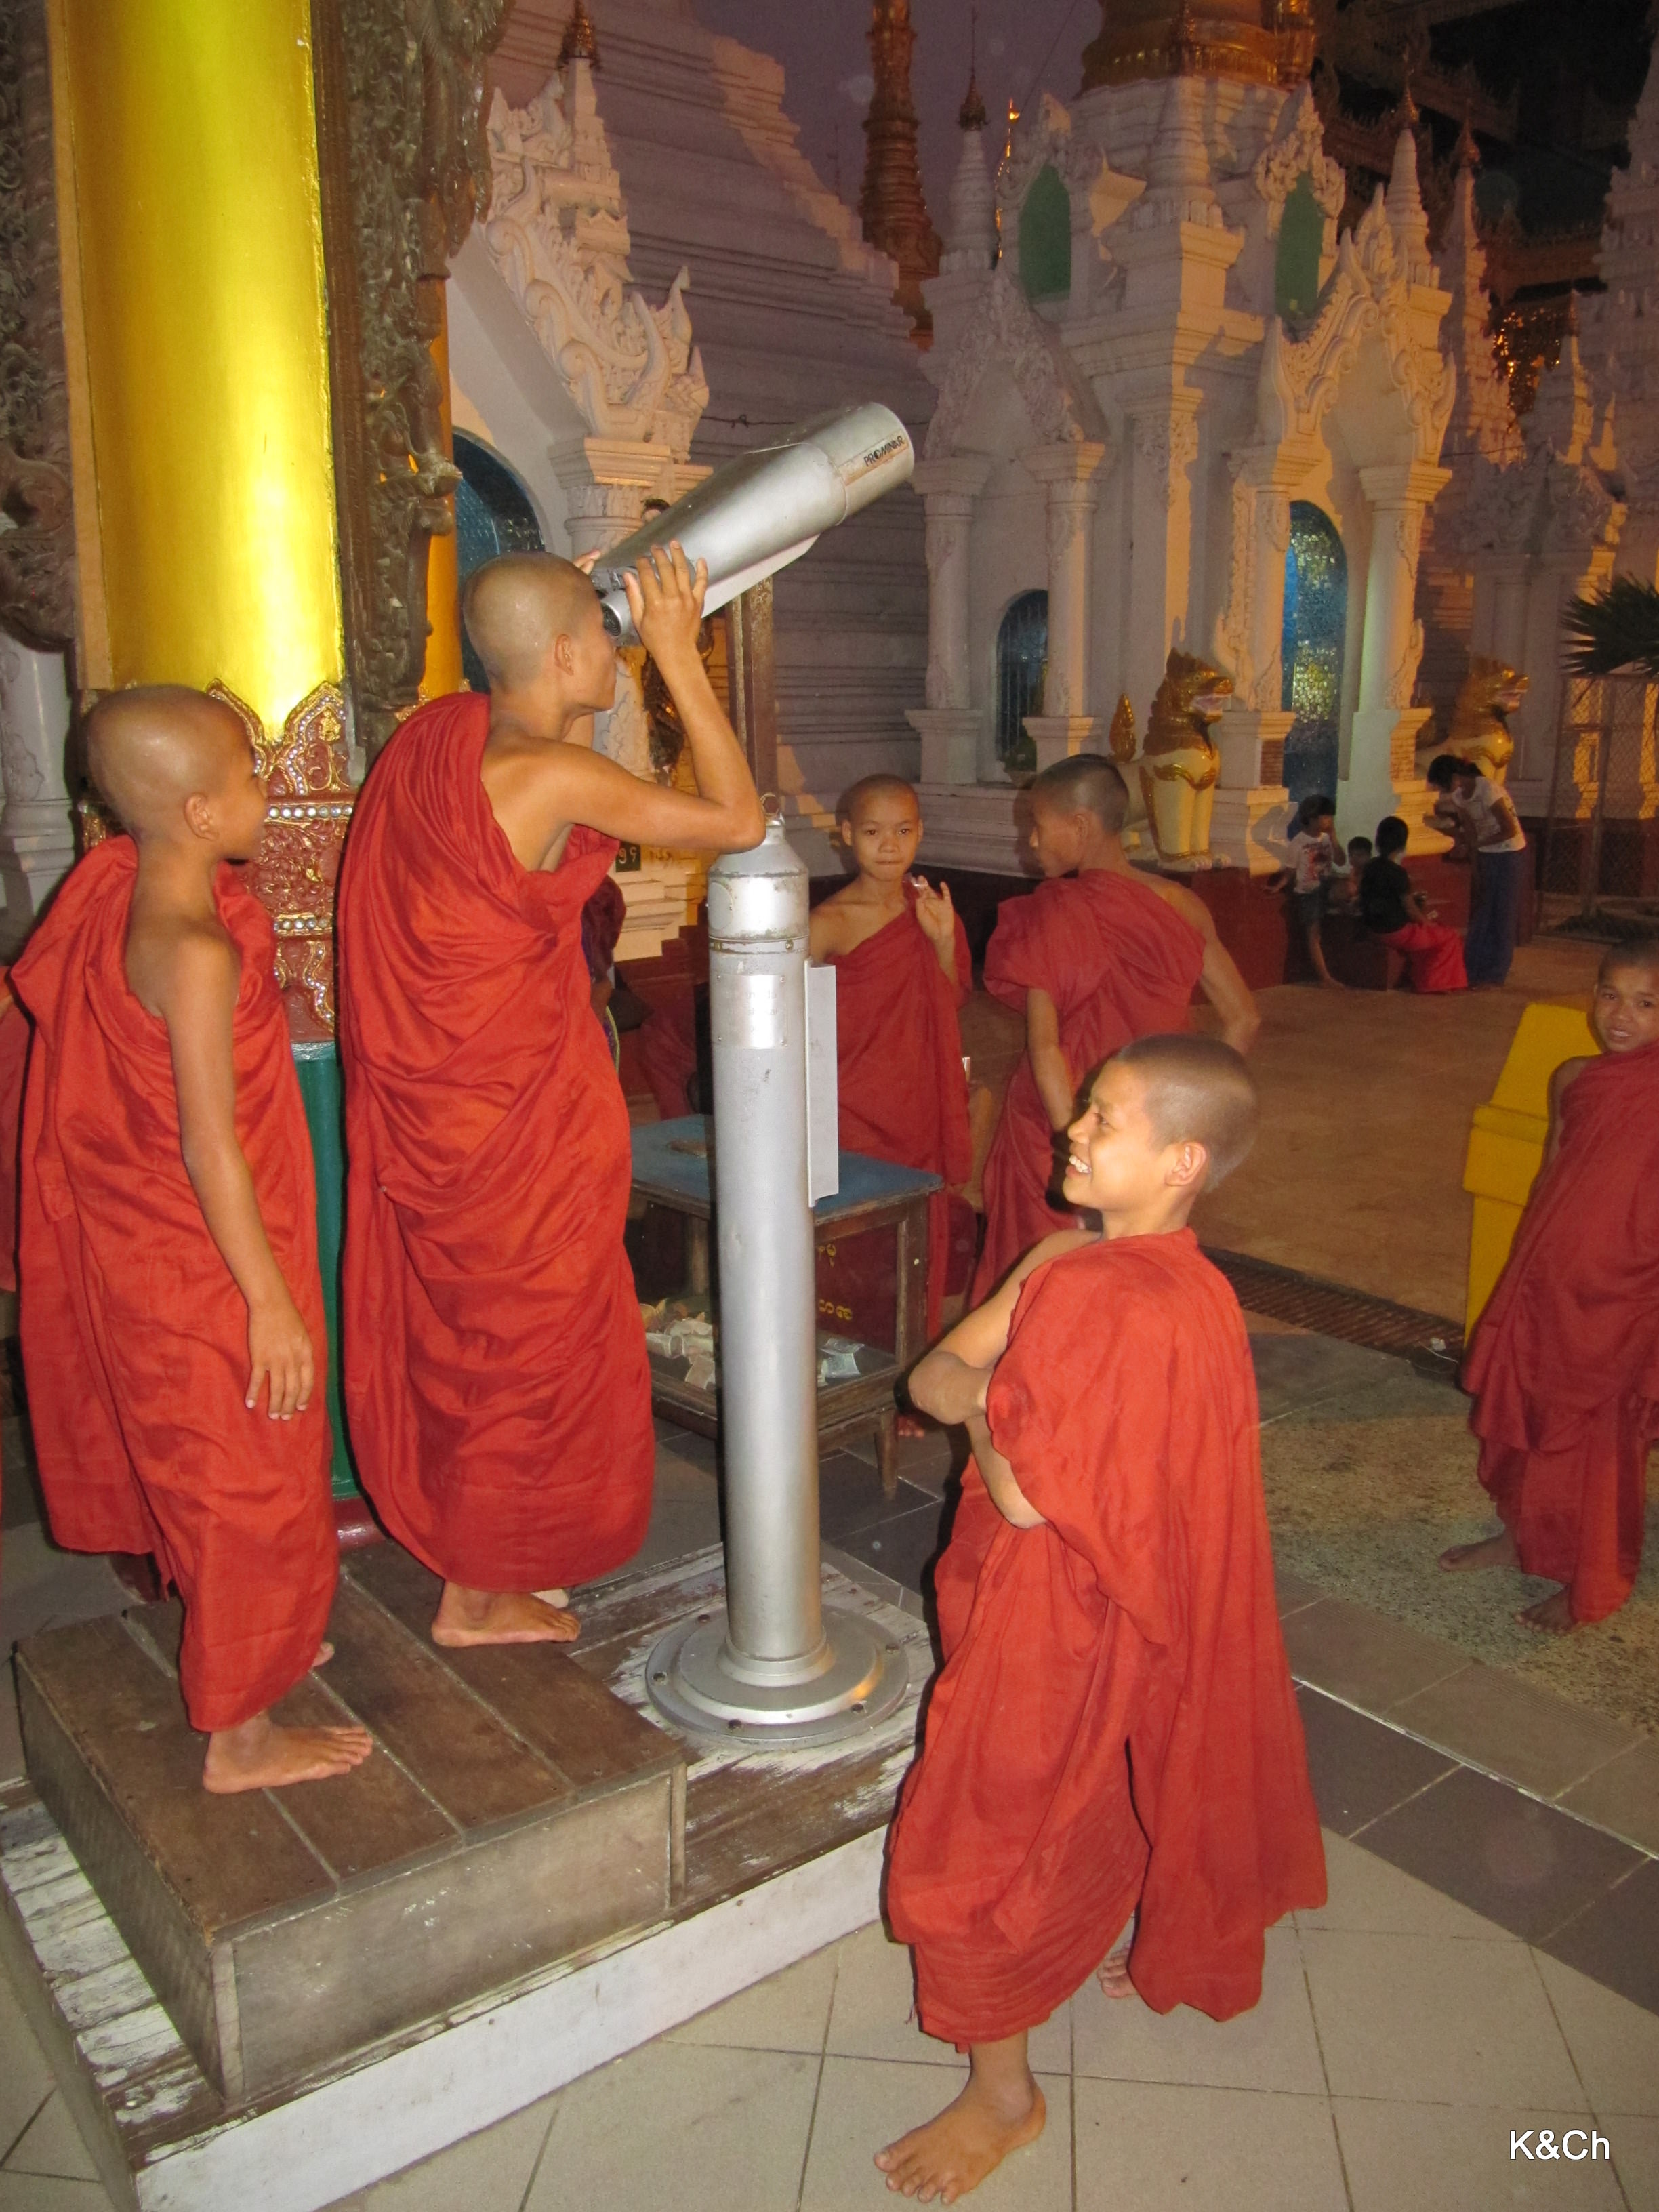 Οι μικροί μοναχοί παρατηρούν τα αστέρια.